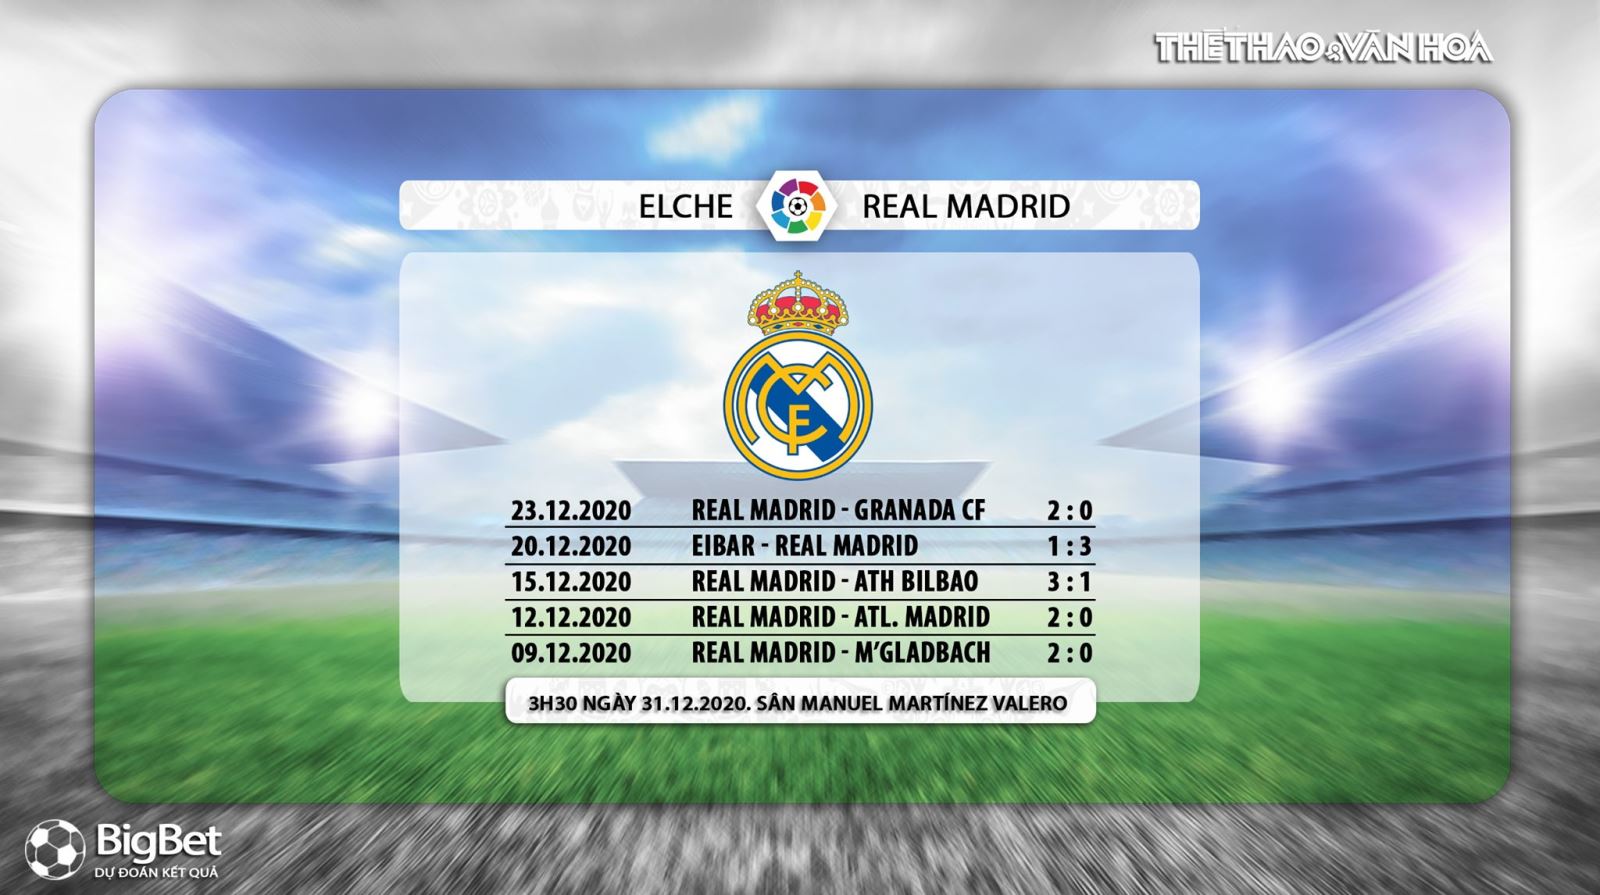 Keo nha cai, Nhận định kết quả, Elche vs Real Madrid, Trực tiếp bóng đá TBN hôm nay, BĐTV, nhận định bóng đá bóng đá Elche đấu với Real Madrid, trực tiếp bóng đá La Liga